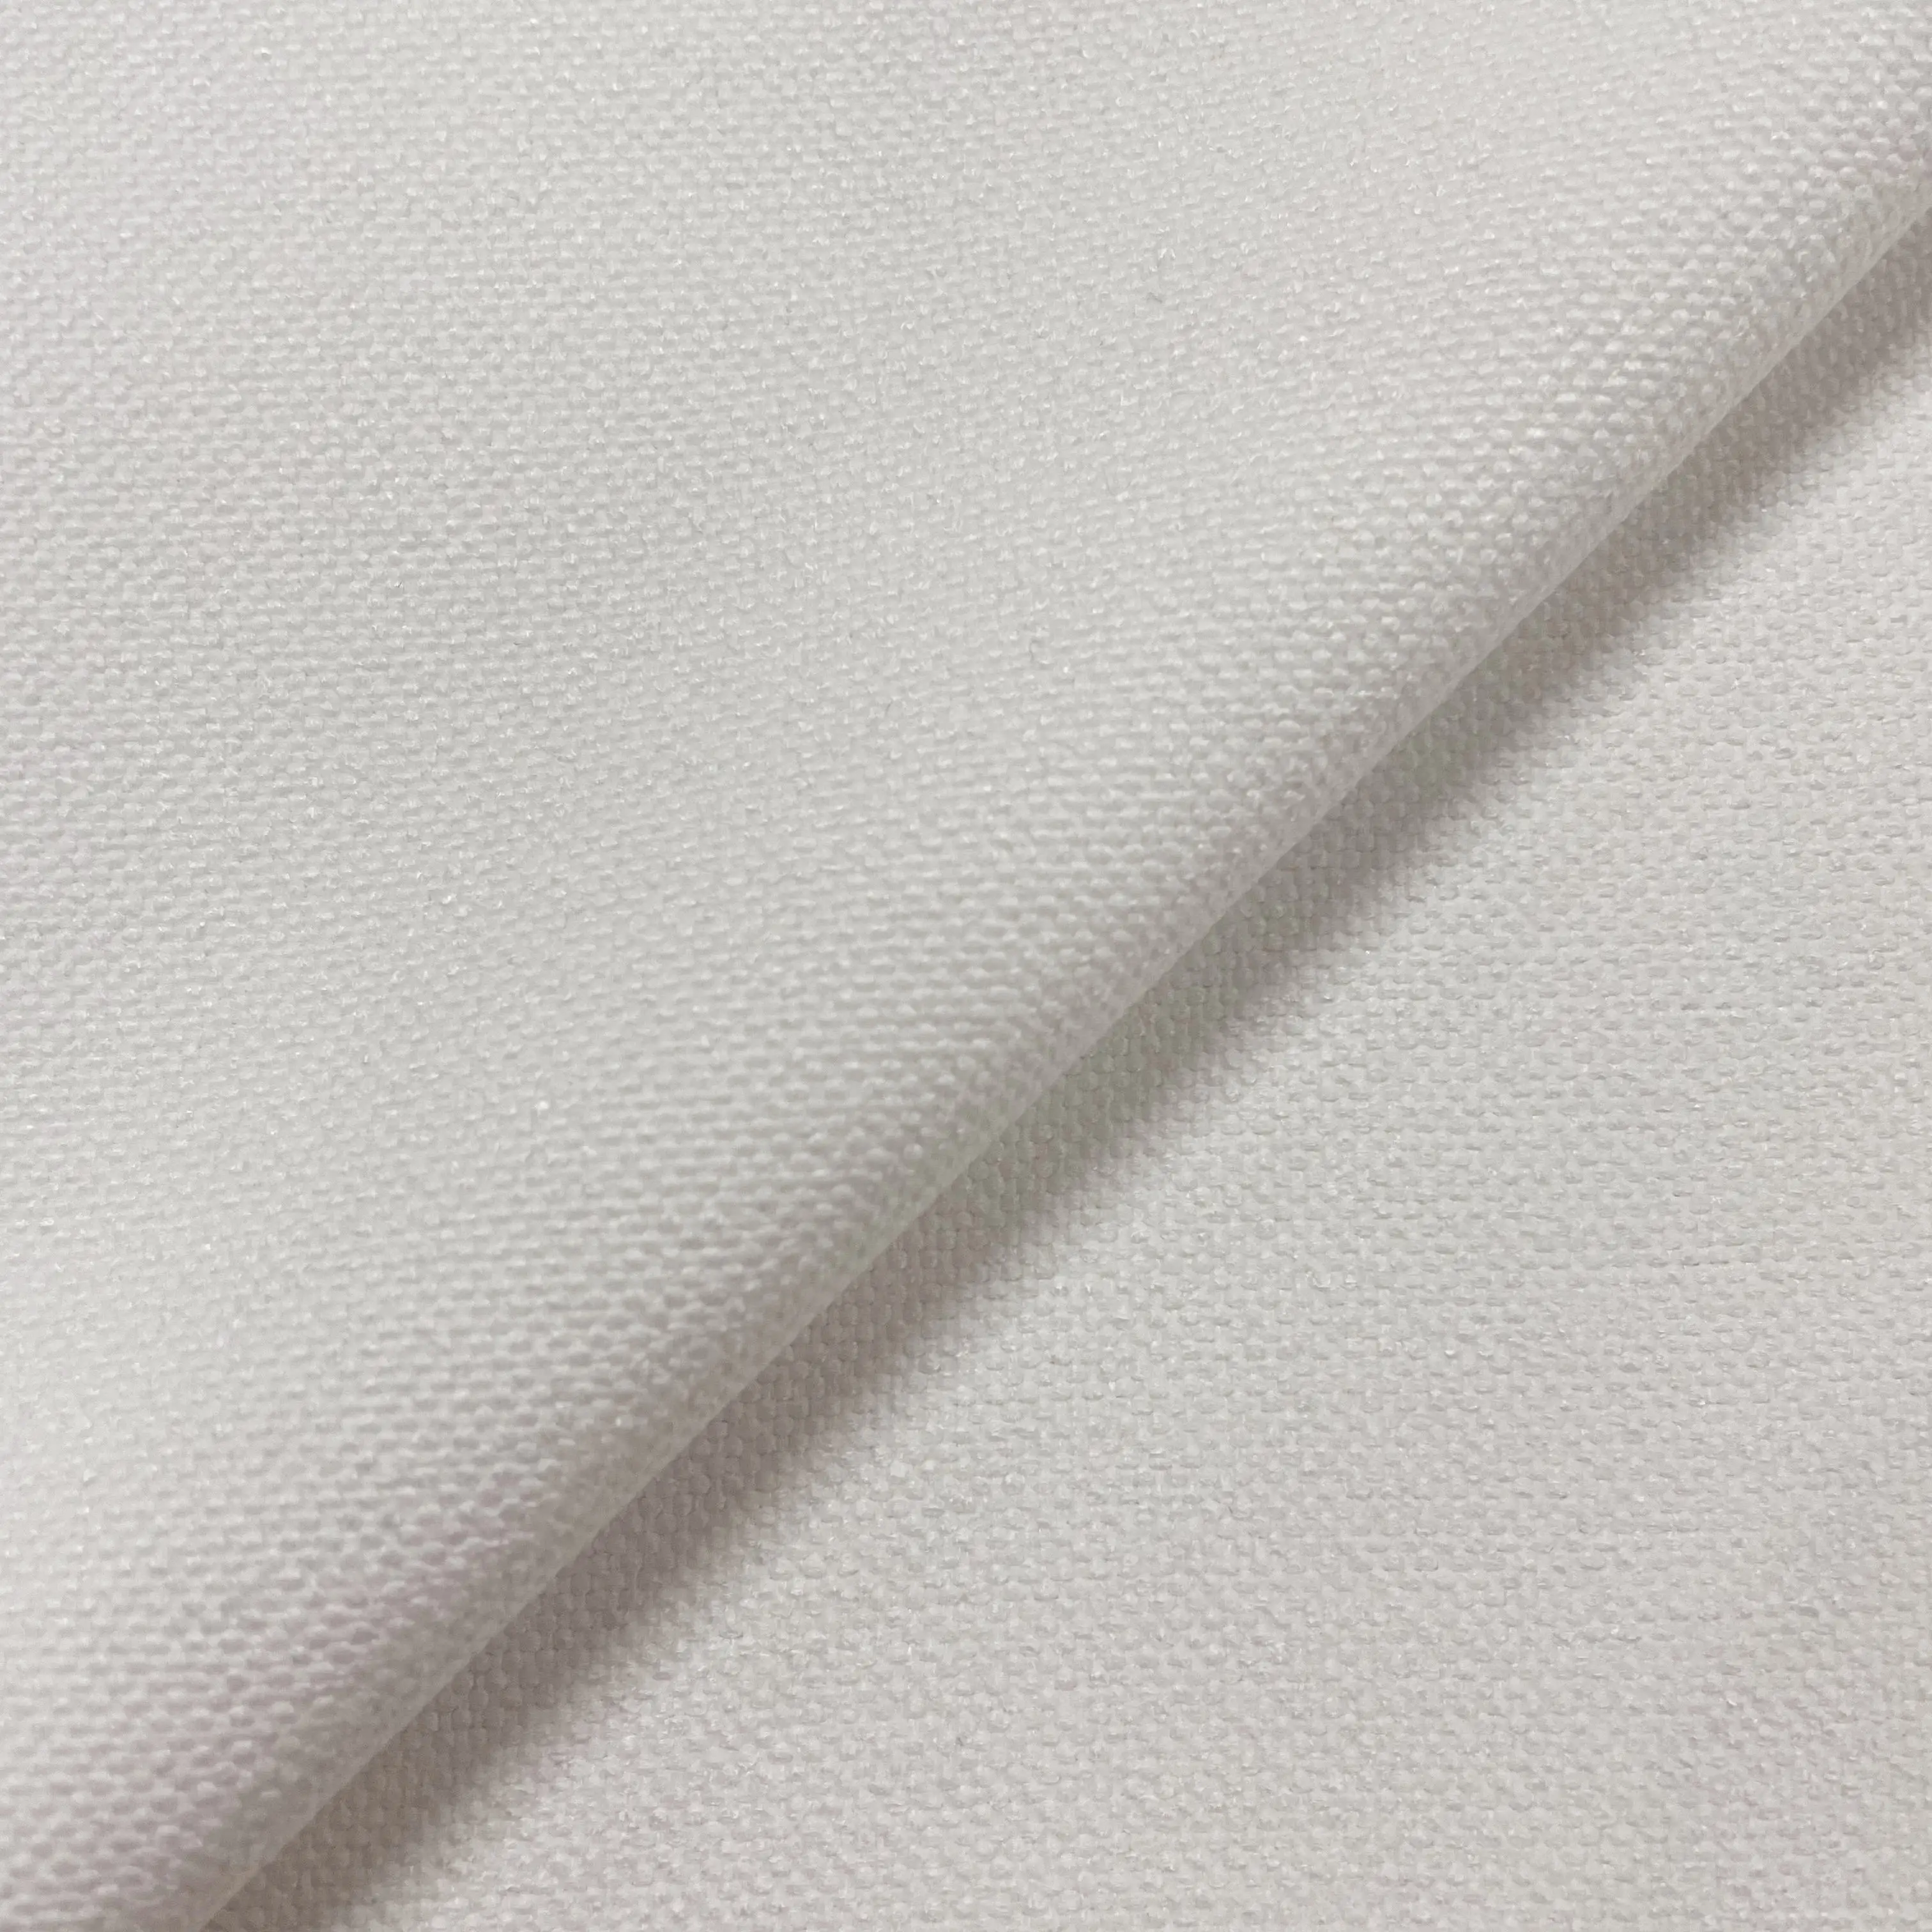 Hoge Kwaliteit Bekleding Stof Wit 300Gsm Katoen Zoals 100% Polyester Stof Voor Warmteoverdracht